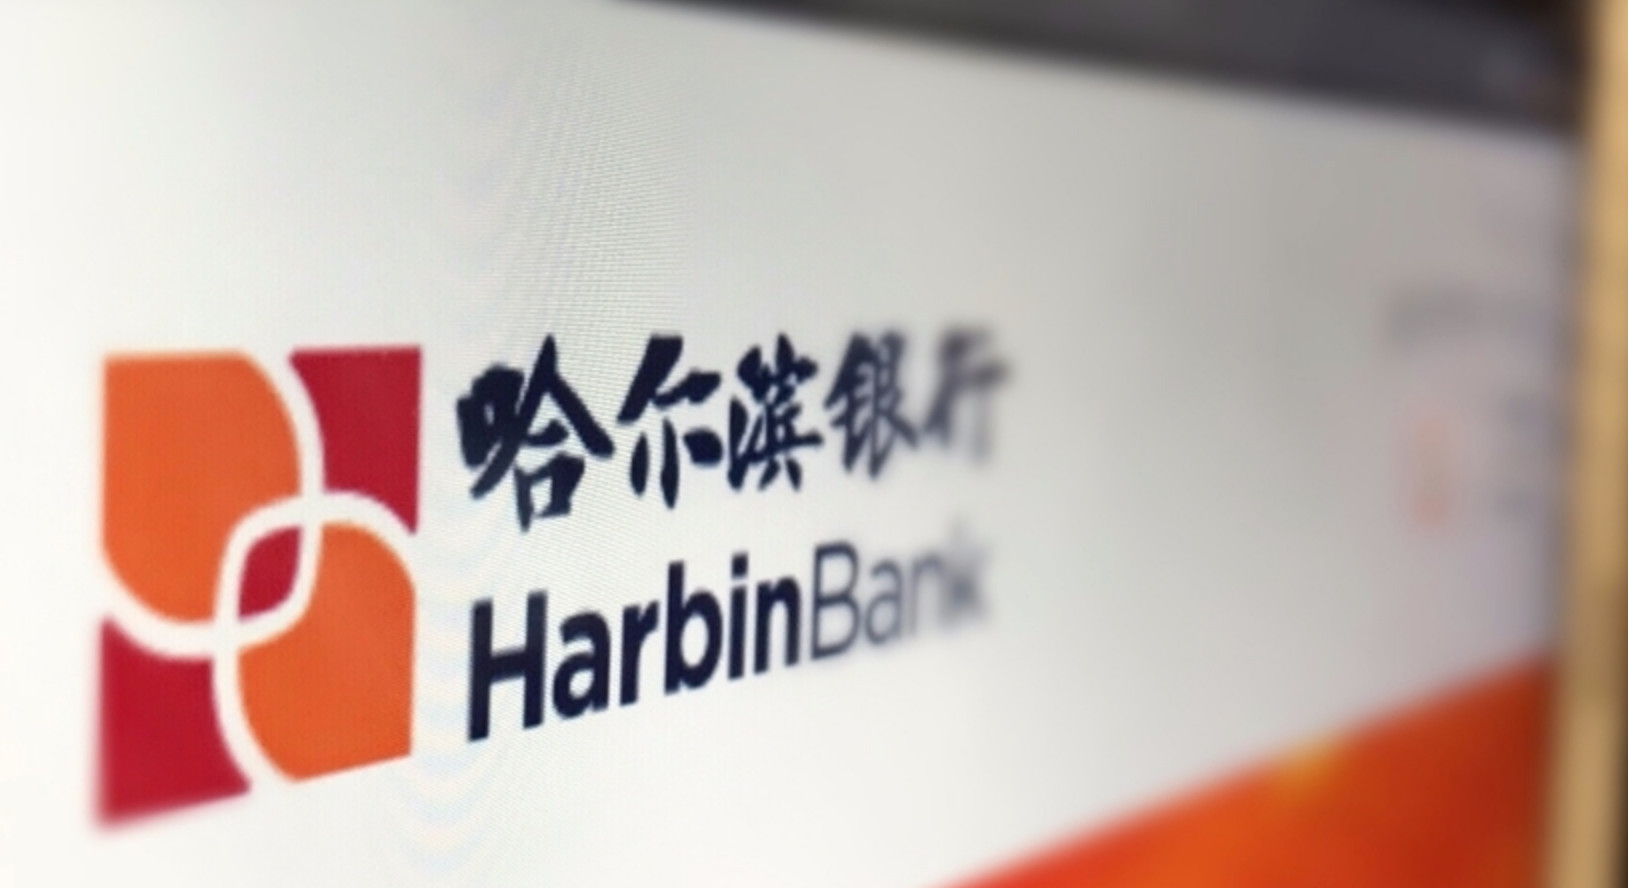 哈尔滨银行半年被罚近百万 光鲜总部大楼难掩盈利指标下降